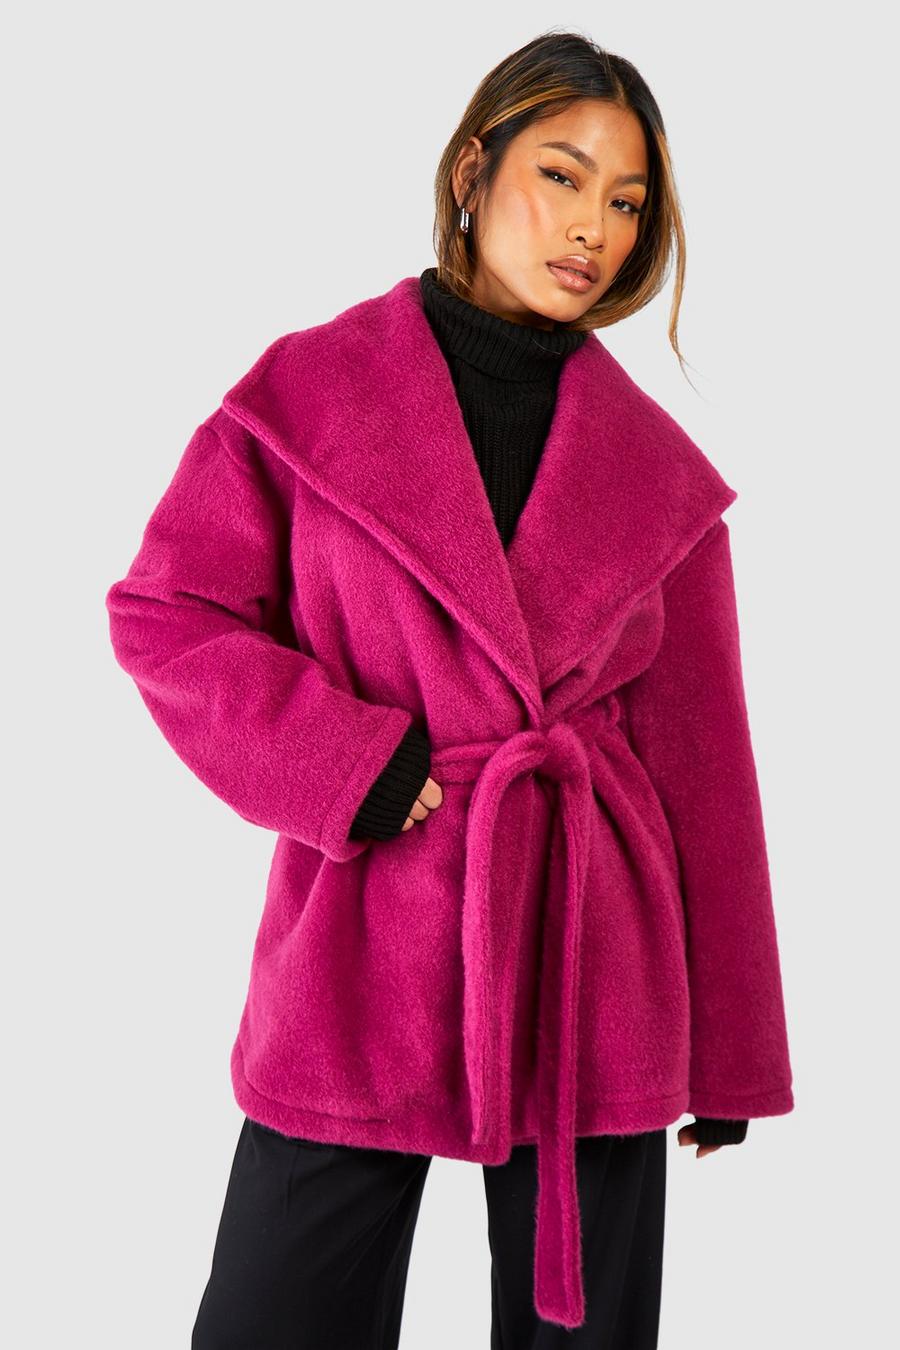 Cappotto lungo effetto lana con trama, colletto sciallato e cintura, Raspberry image number 1